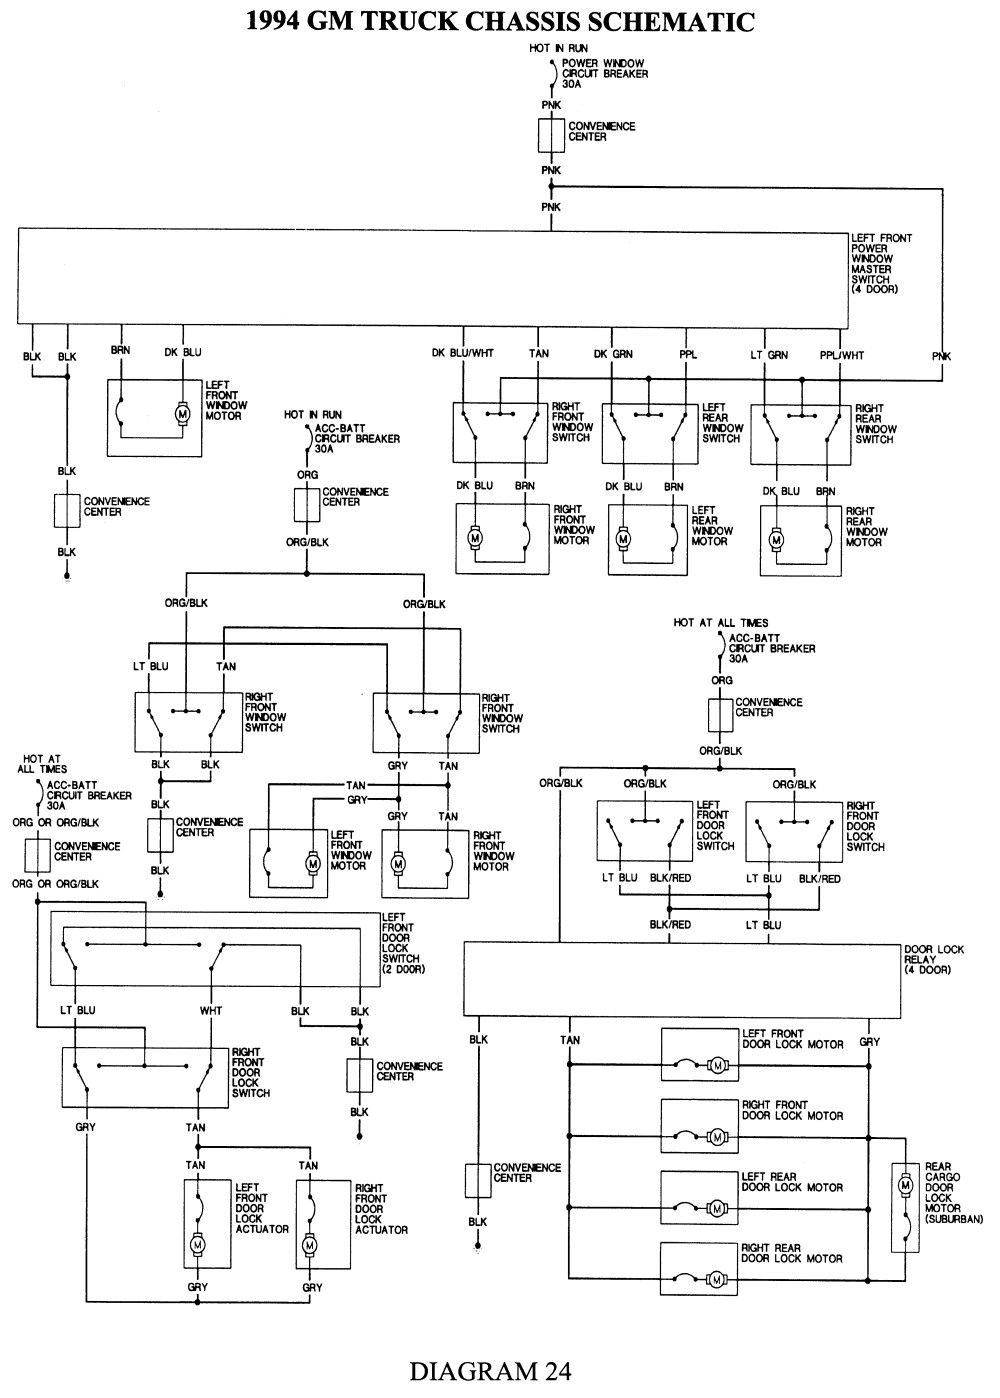 1993 Chevy 3500 Wiring Diagram Wiring Diagram 2000 S10 Wiring Diagram 1998 Chevy K3500 Wiring Diagram